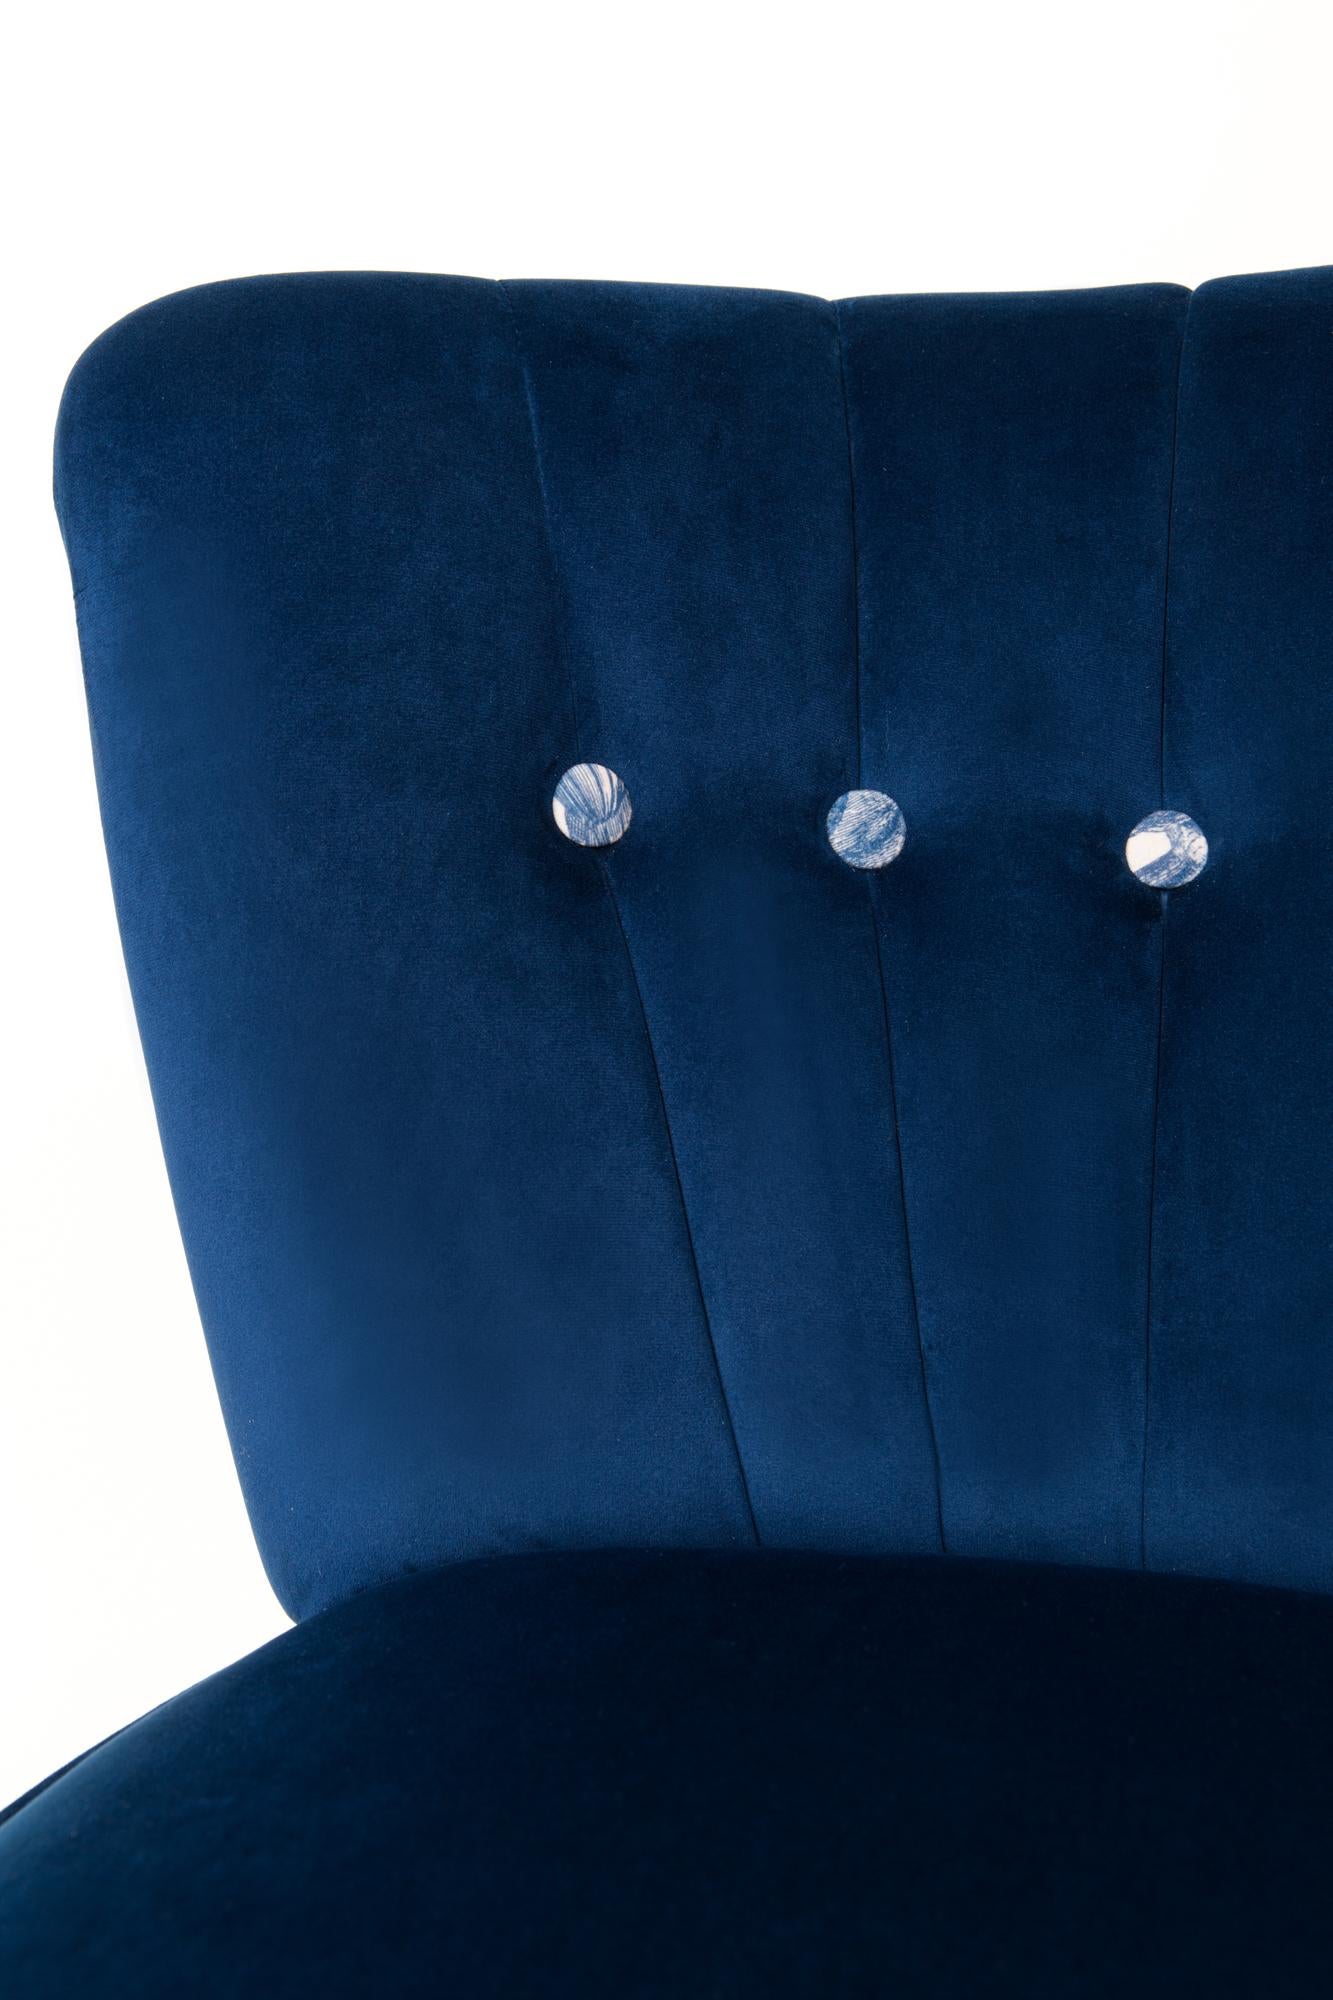 Midcentury Navy Blue Velvet Armchair, Animal Pattern, Germany, 1960s For Sale 2